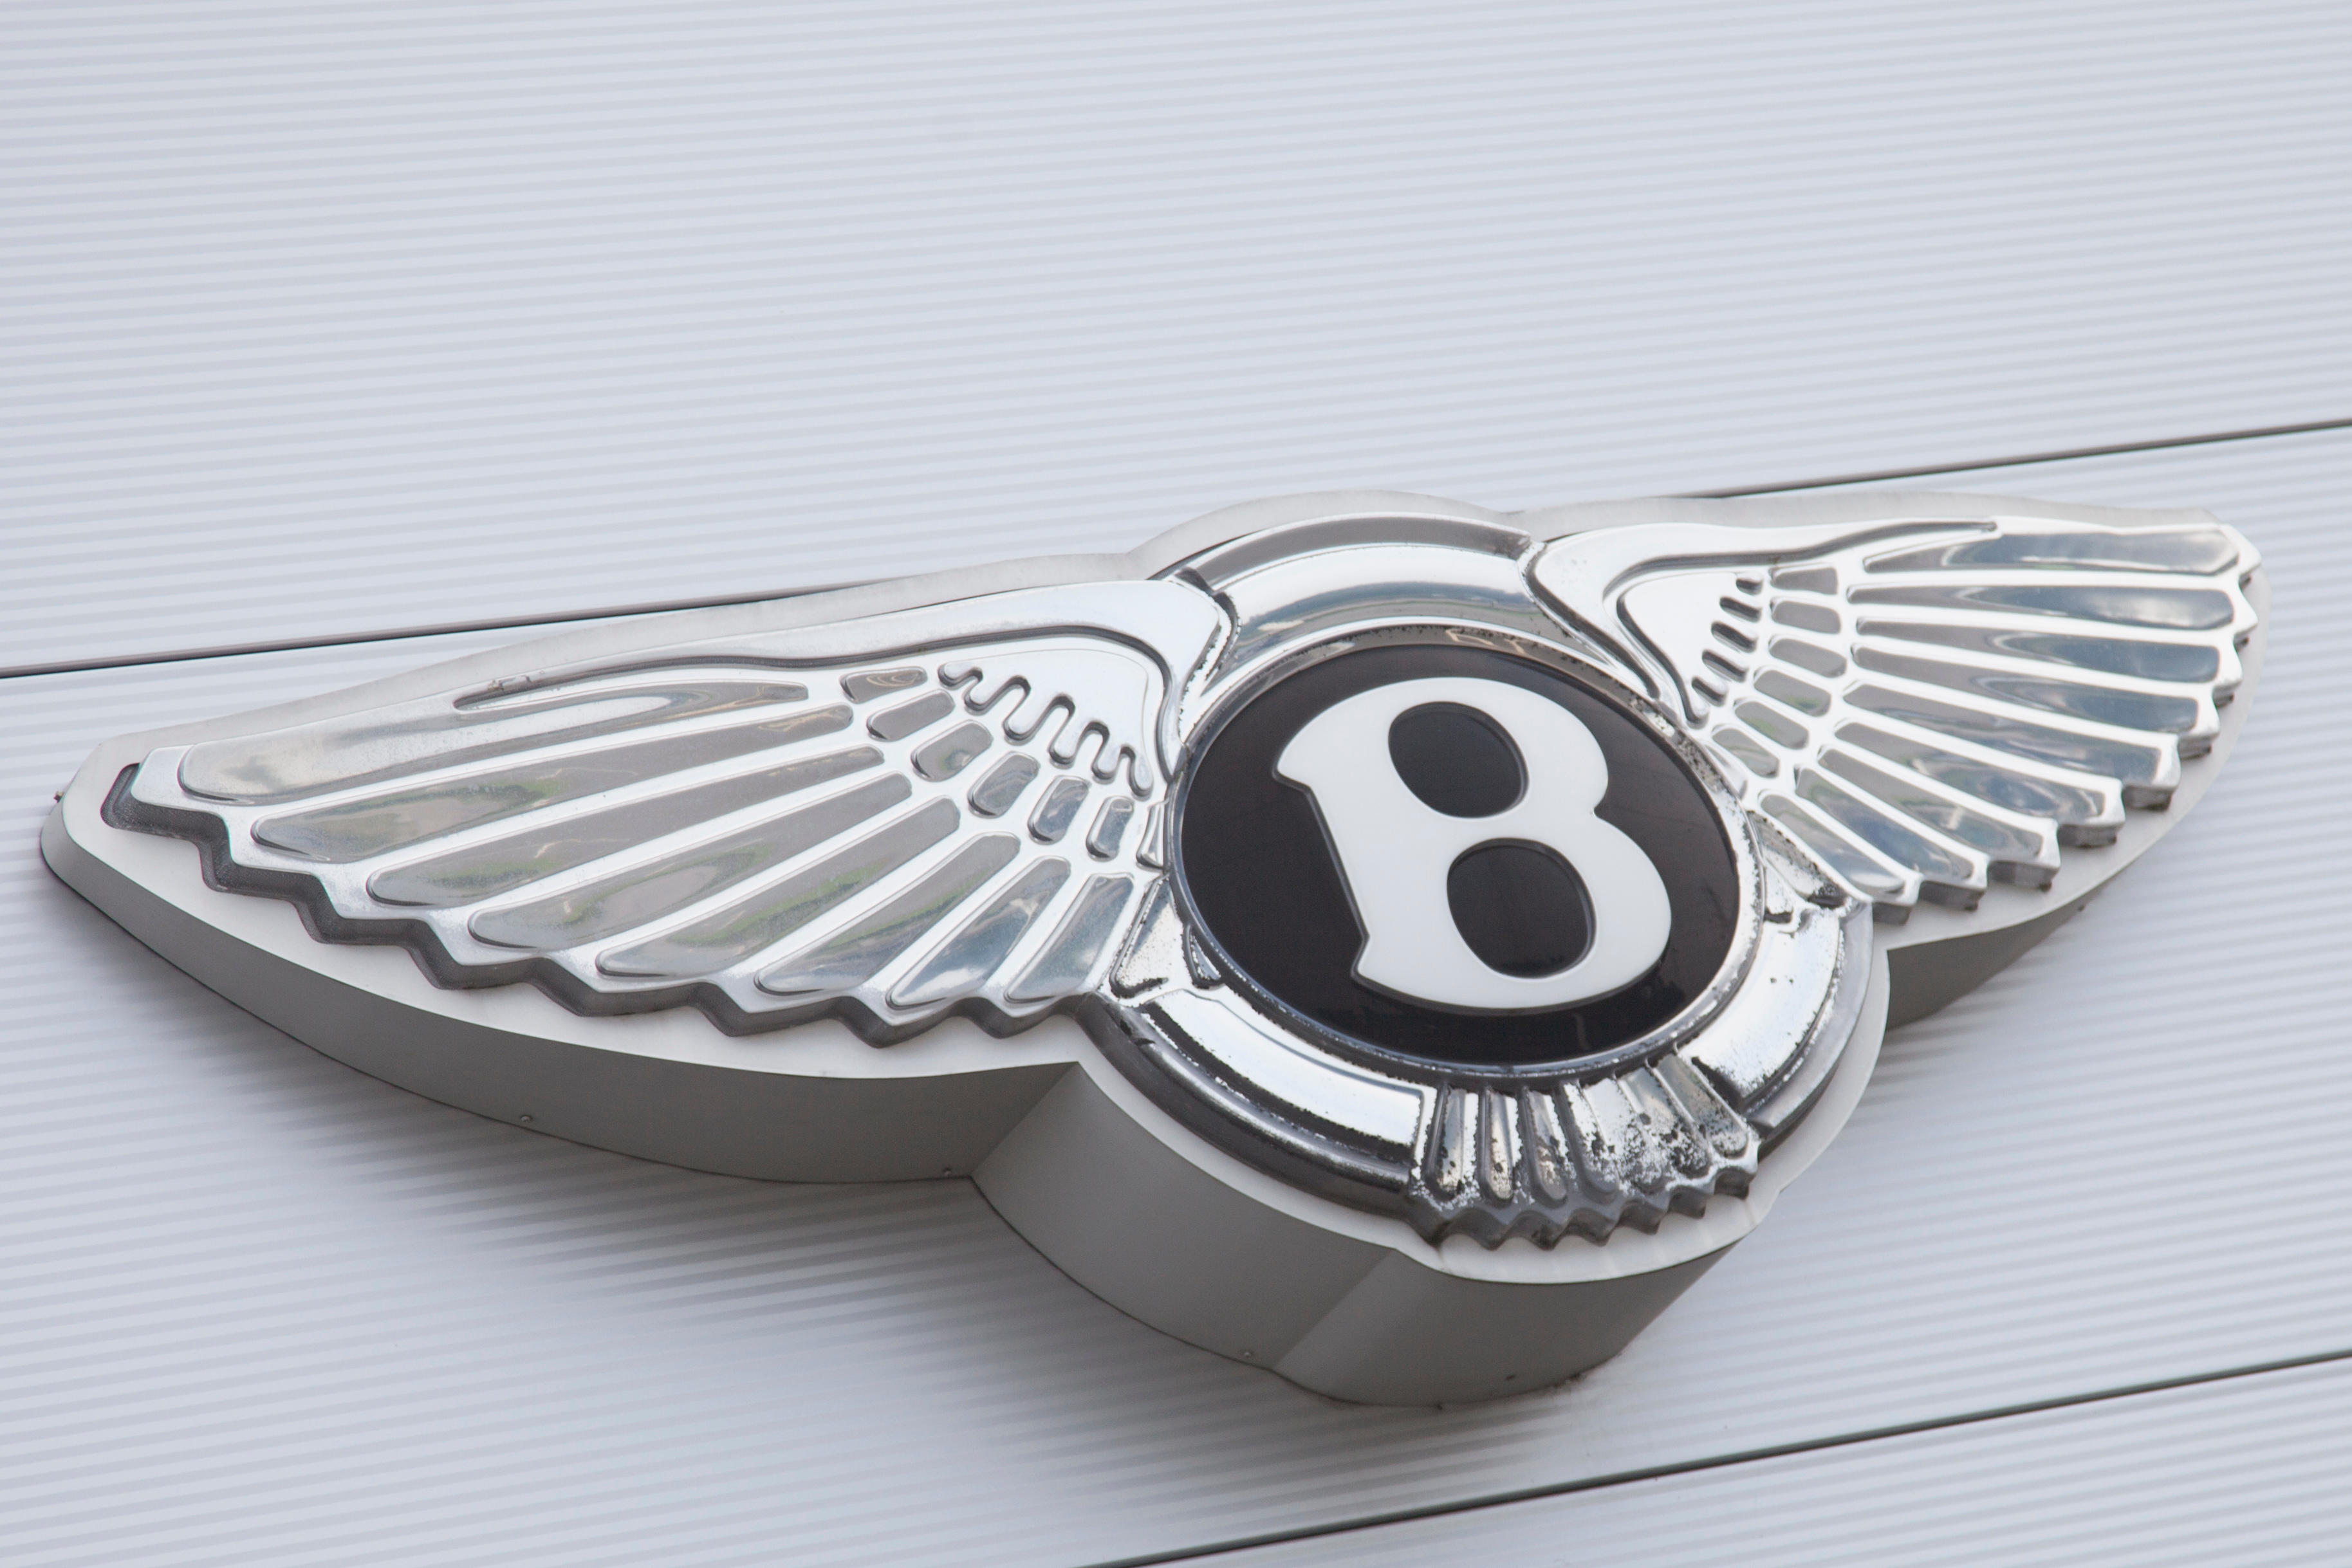 Images Bentley Birmingham